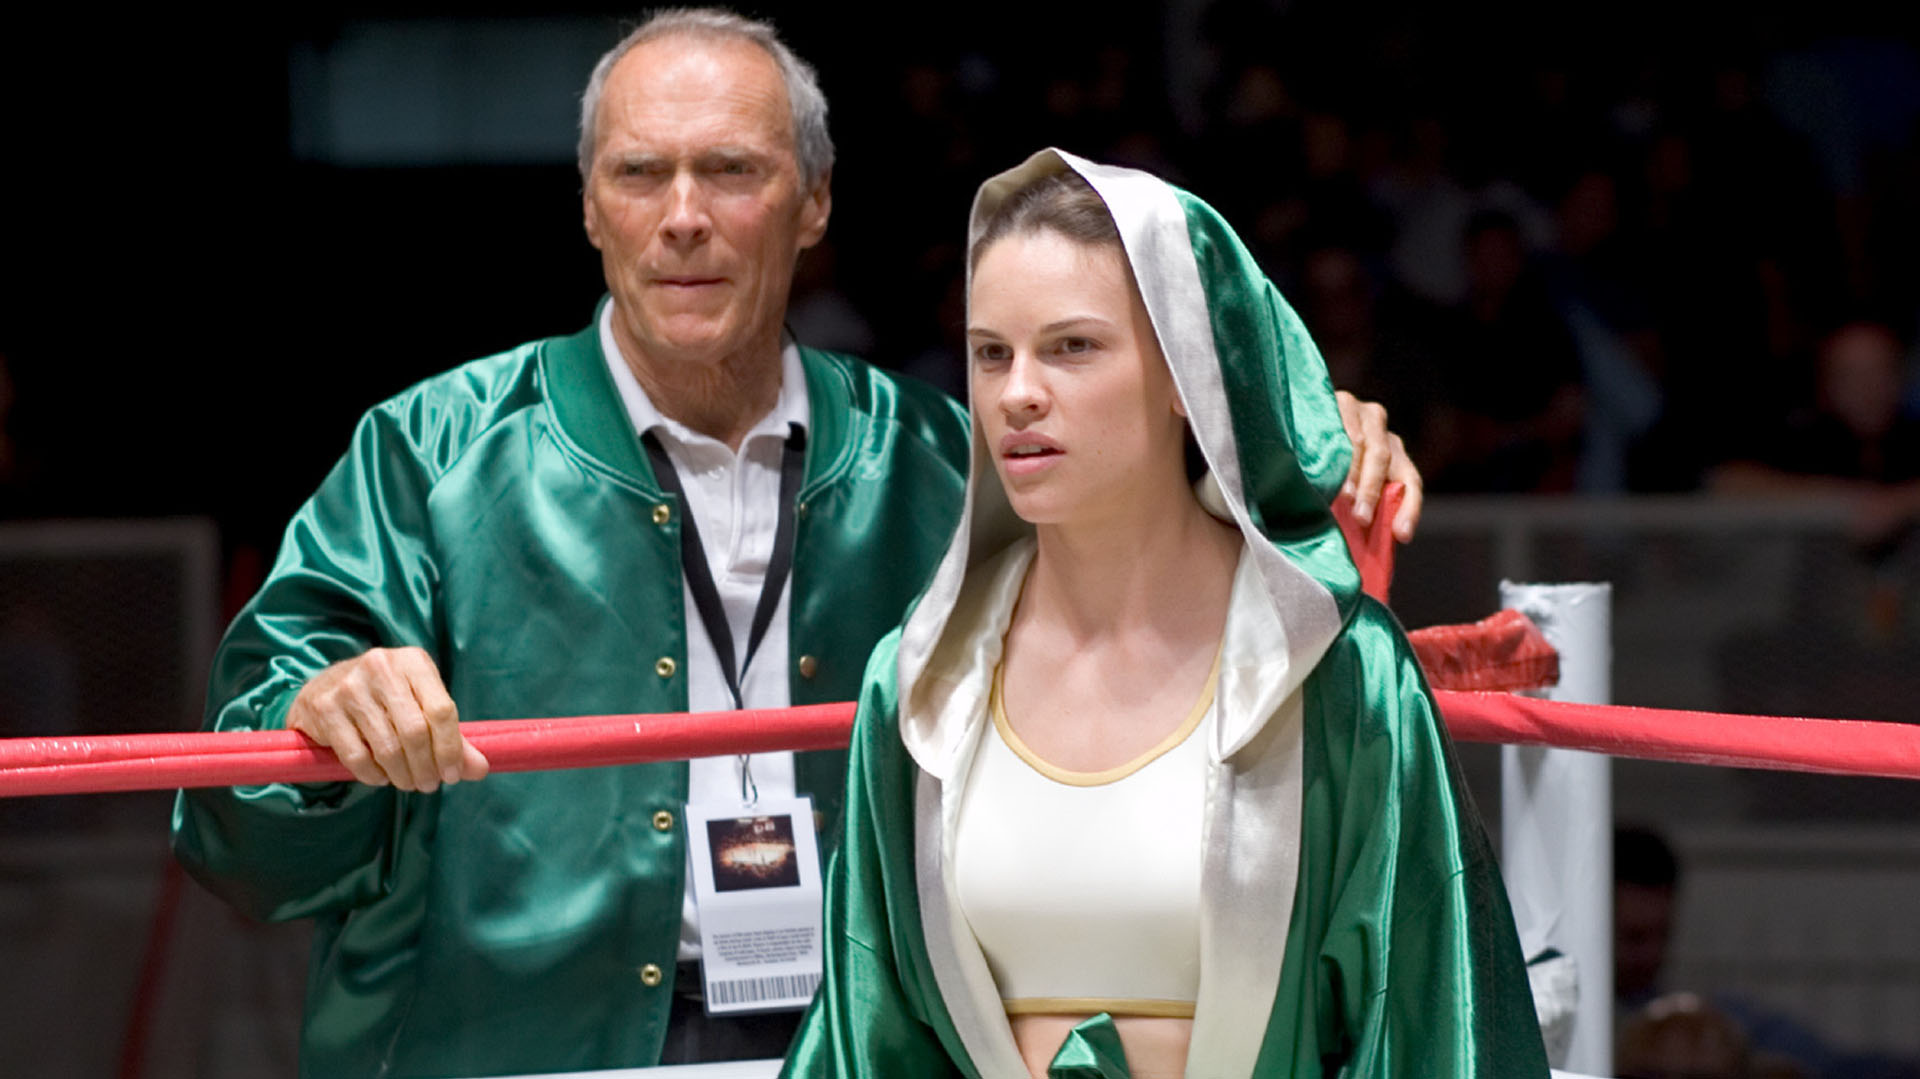 Dirigida por Clint Eastwood fue Maggie Fitzgerald, una mujer pobre y desesperada que, sin nada que perder, lo da todo por el boxeo.